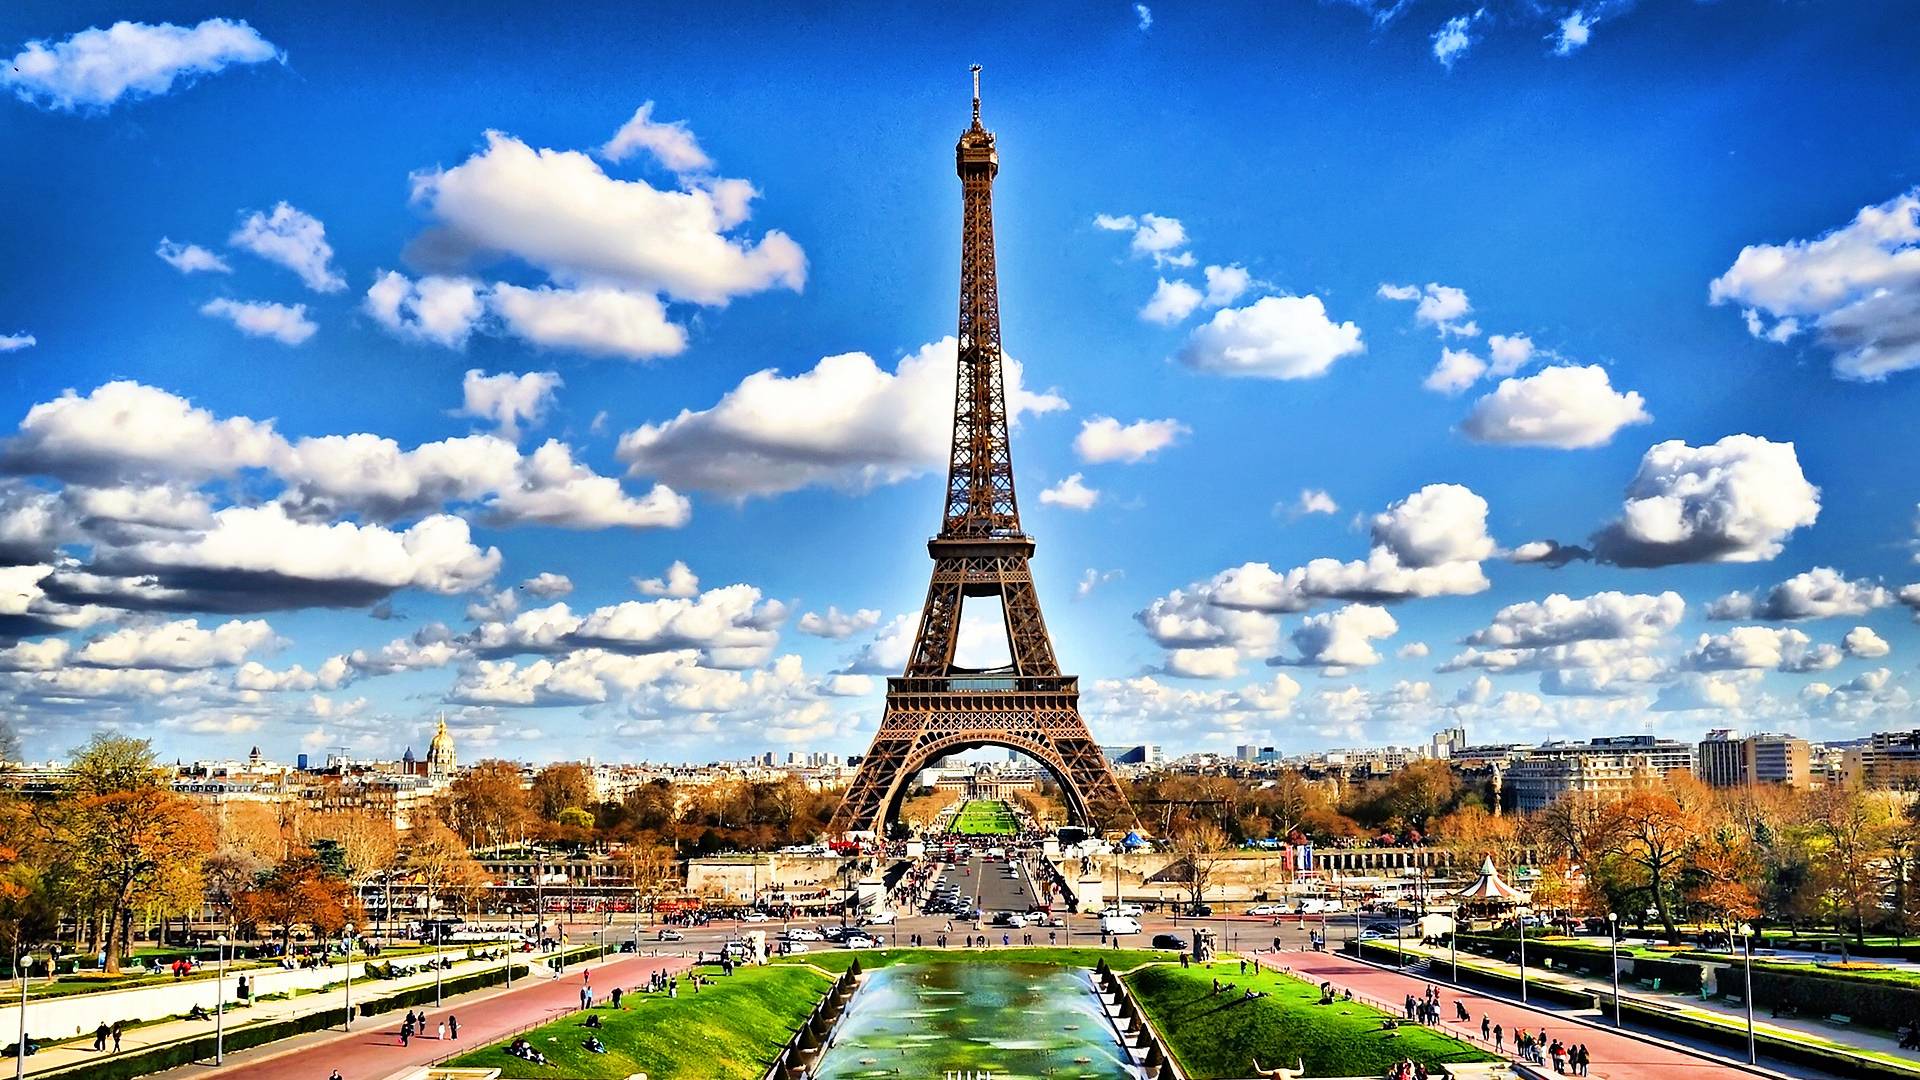 Tháp Eiffel là biểu tượng của Paris mang đến cảm giác lãng mạn và tình yêu đôi lứa. Những hình nền xuất hiện với tông màu độc đáo, sẽ đưa bạn đến thế giới của một đô thị với một tòa tháp huyền thoại mang đậm tính chất Pháp. Đừng bỏ lỡ cơ hội để chiêm ngưỡng những bức ảnh này, chúng sẽ khiến bạn bị cuốn hút.